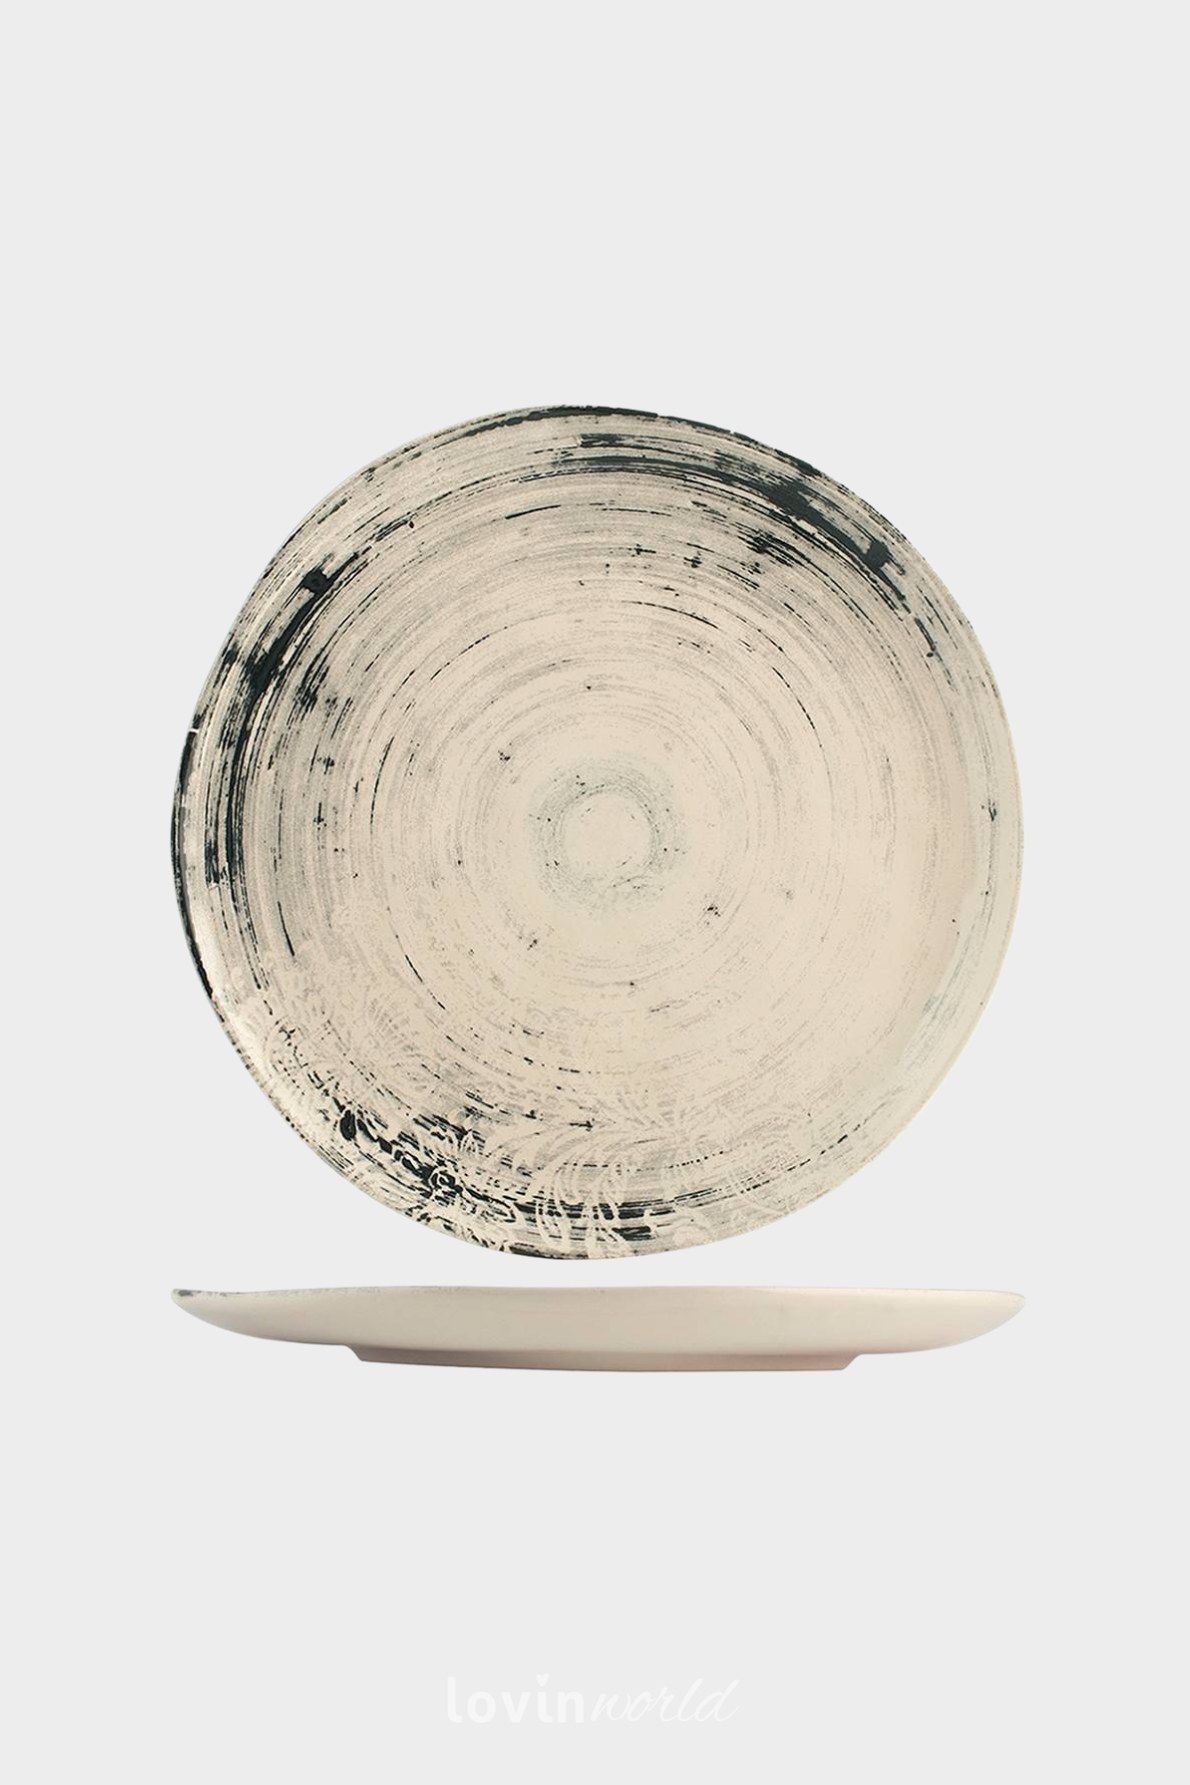 Piatto piano Silk in stoneware in colore beige 26 cm.-1